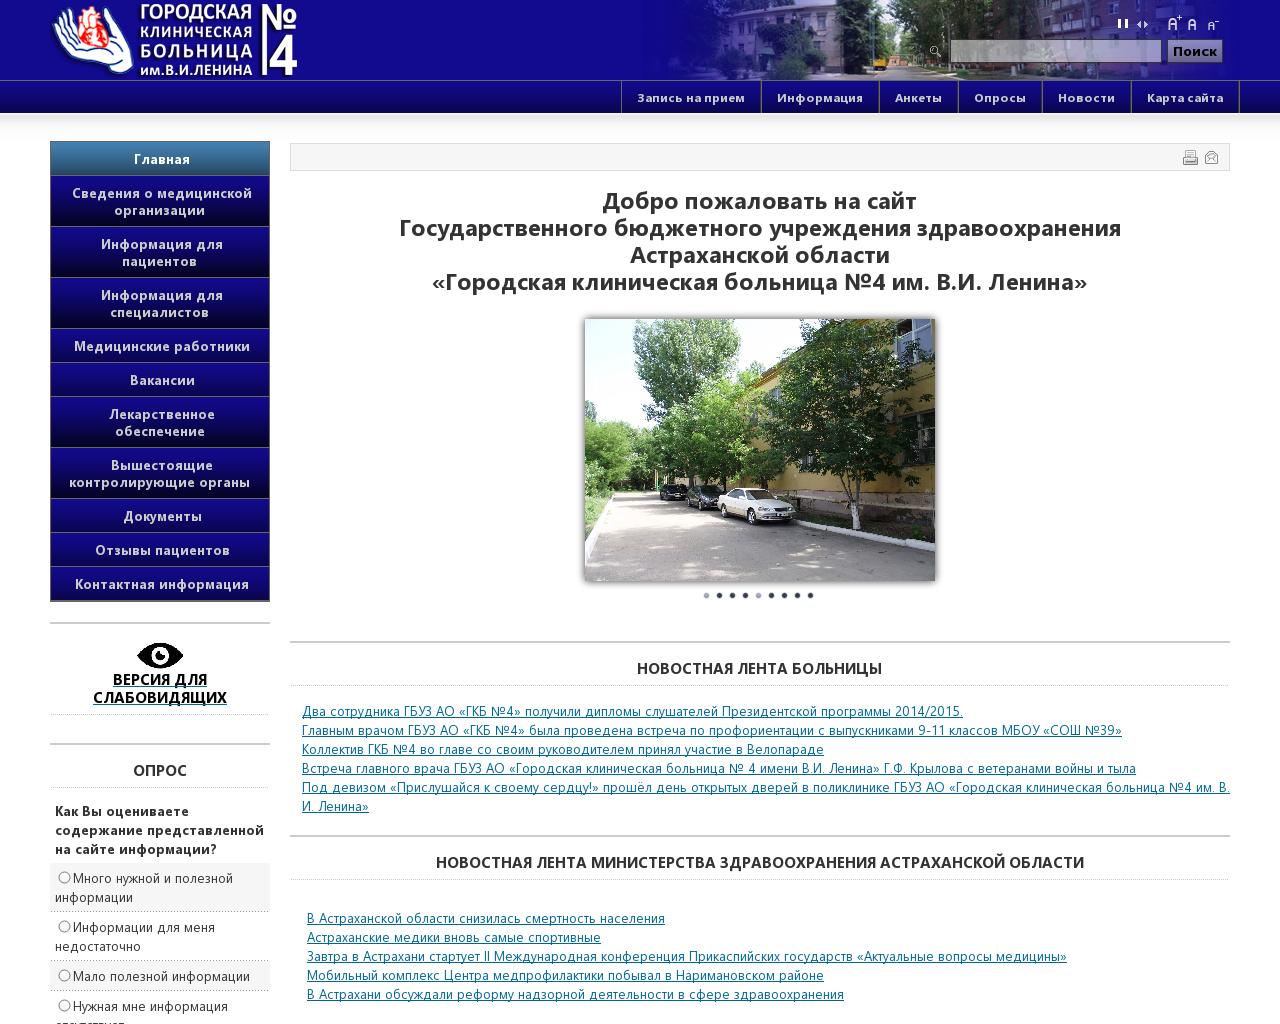 Изображение сайта 4-gkb.ru в разрешении 1280x1024